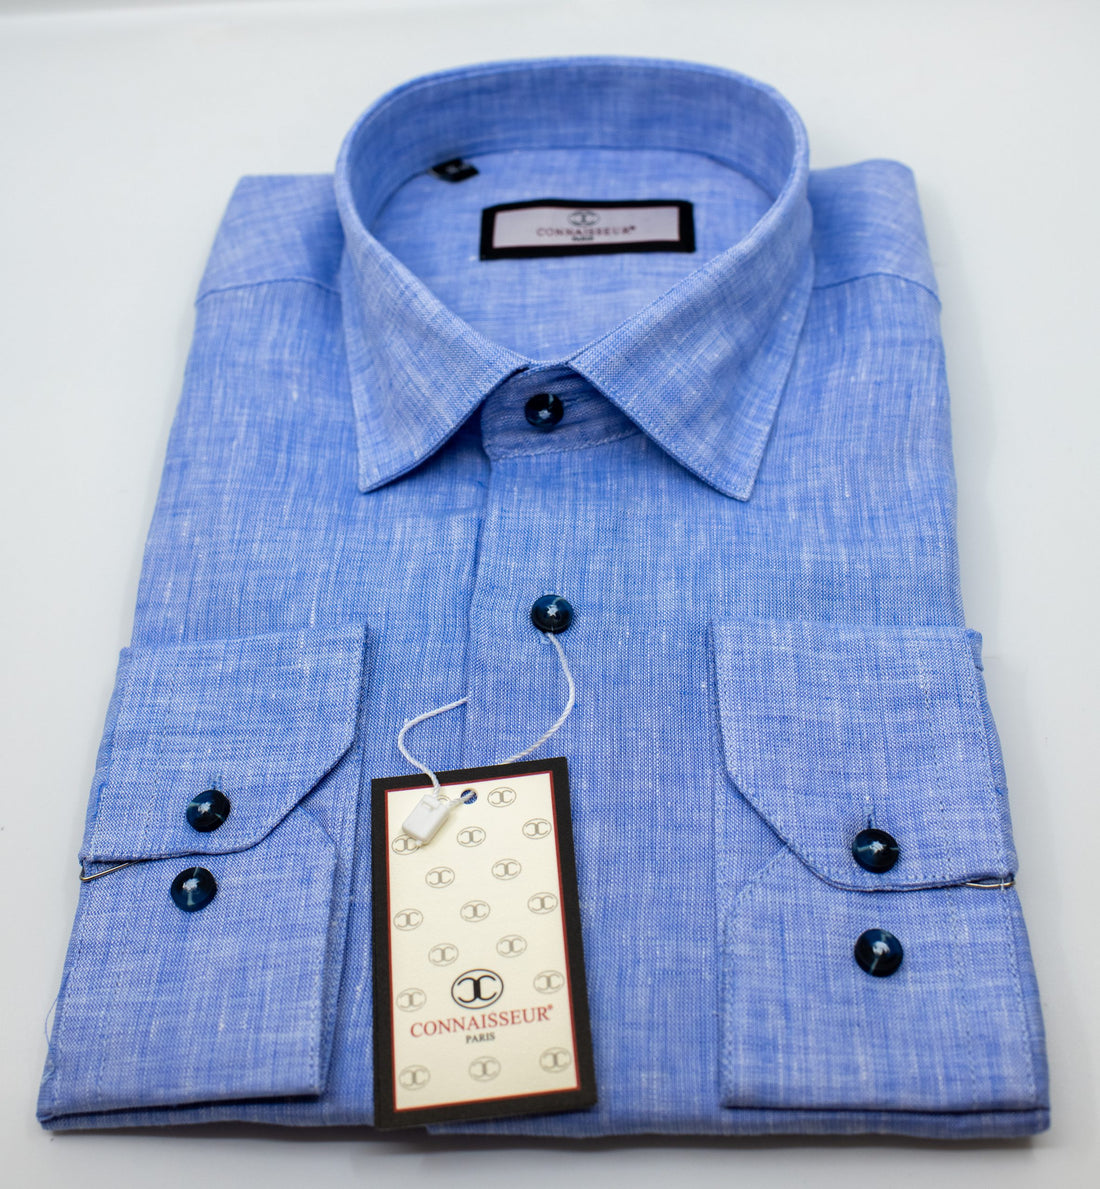 Connaisseur - Light blue linen slim fit dress shirt